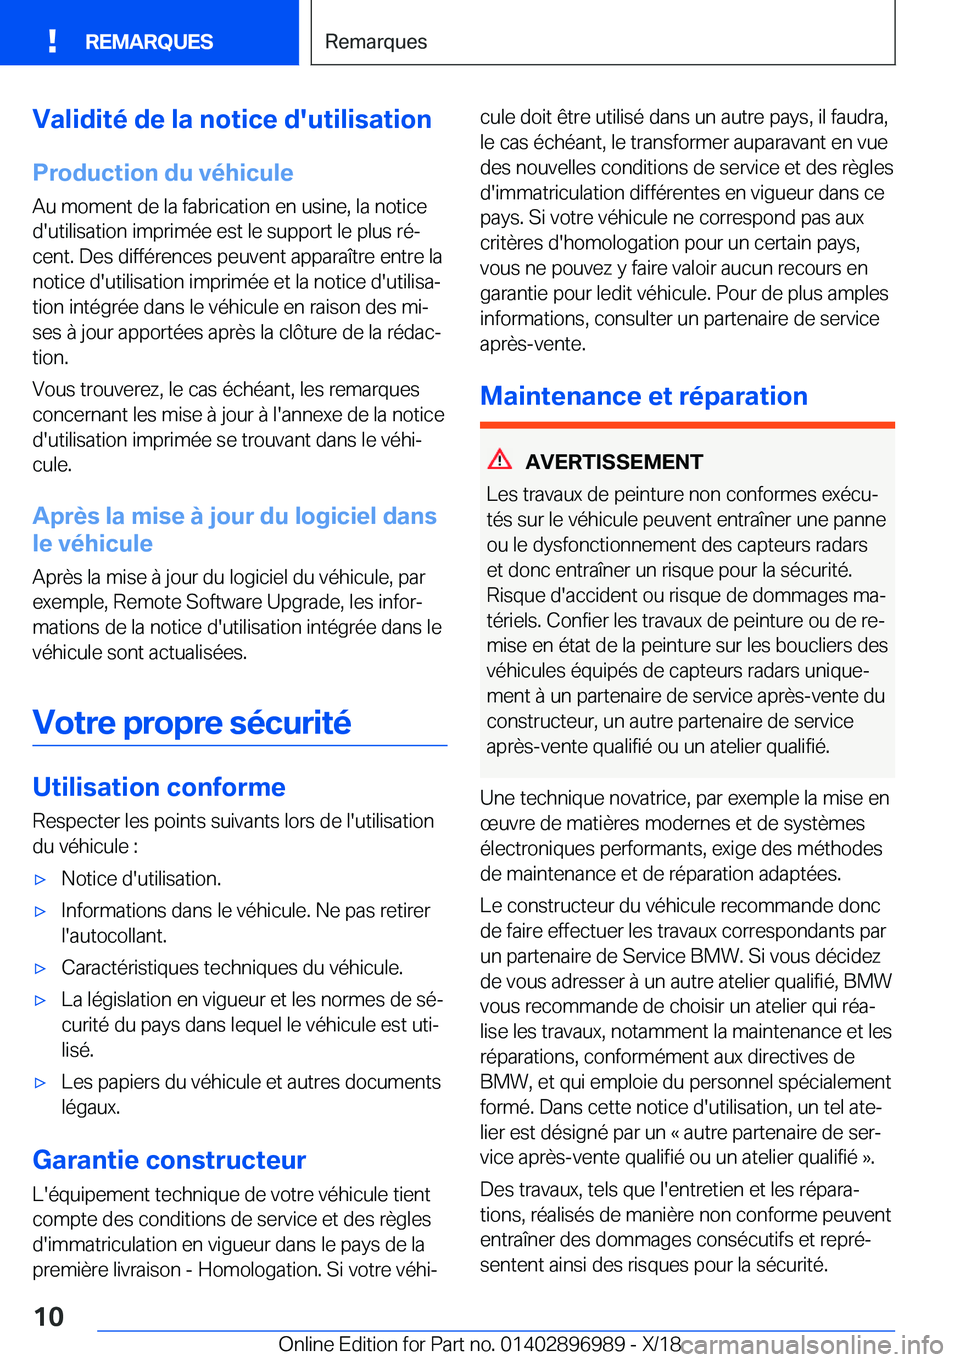 BMW Z4 2019  Notices Demploi (in French) �V�a�l�i�d�i�t�é��d�e��l�a��n�o�t�i�c�e��d�'�u�t�i�l�i�s�a�t�i�o�n
�P�r�o�d�u�c�t�i�o�n��d�u��v�é�h�i�c�u�l�e
�A�u��m�o�m�e�n�t��d�e��l�a��f�a�b�r�i�c�a�t�i�o�n��e�n��u�s�i�n�e�,��l